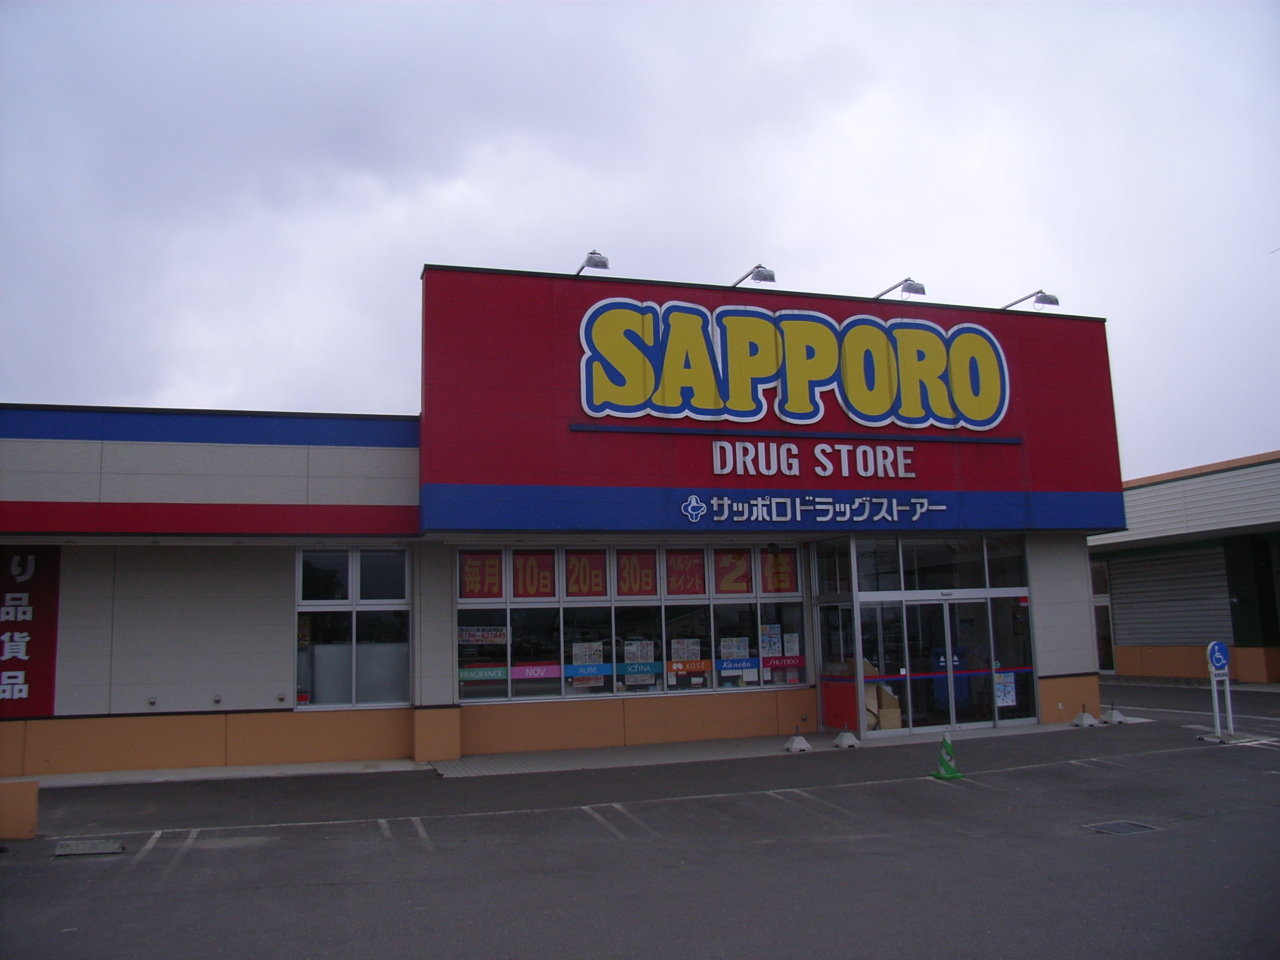 Dorakkusutoa. Sapporo drugstores Nanae shop 251m until (drugstore)